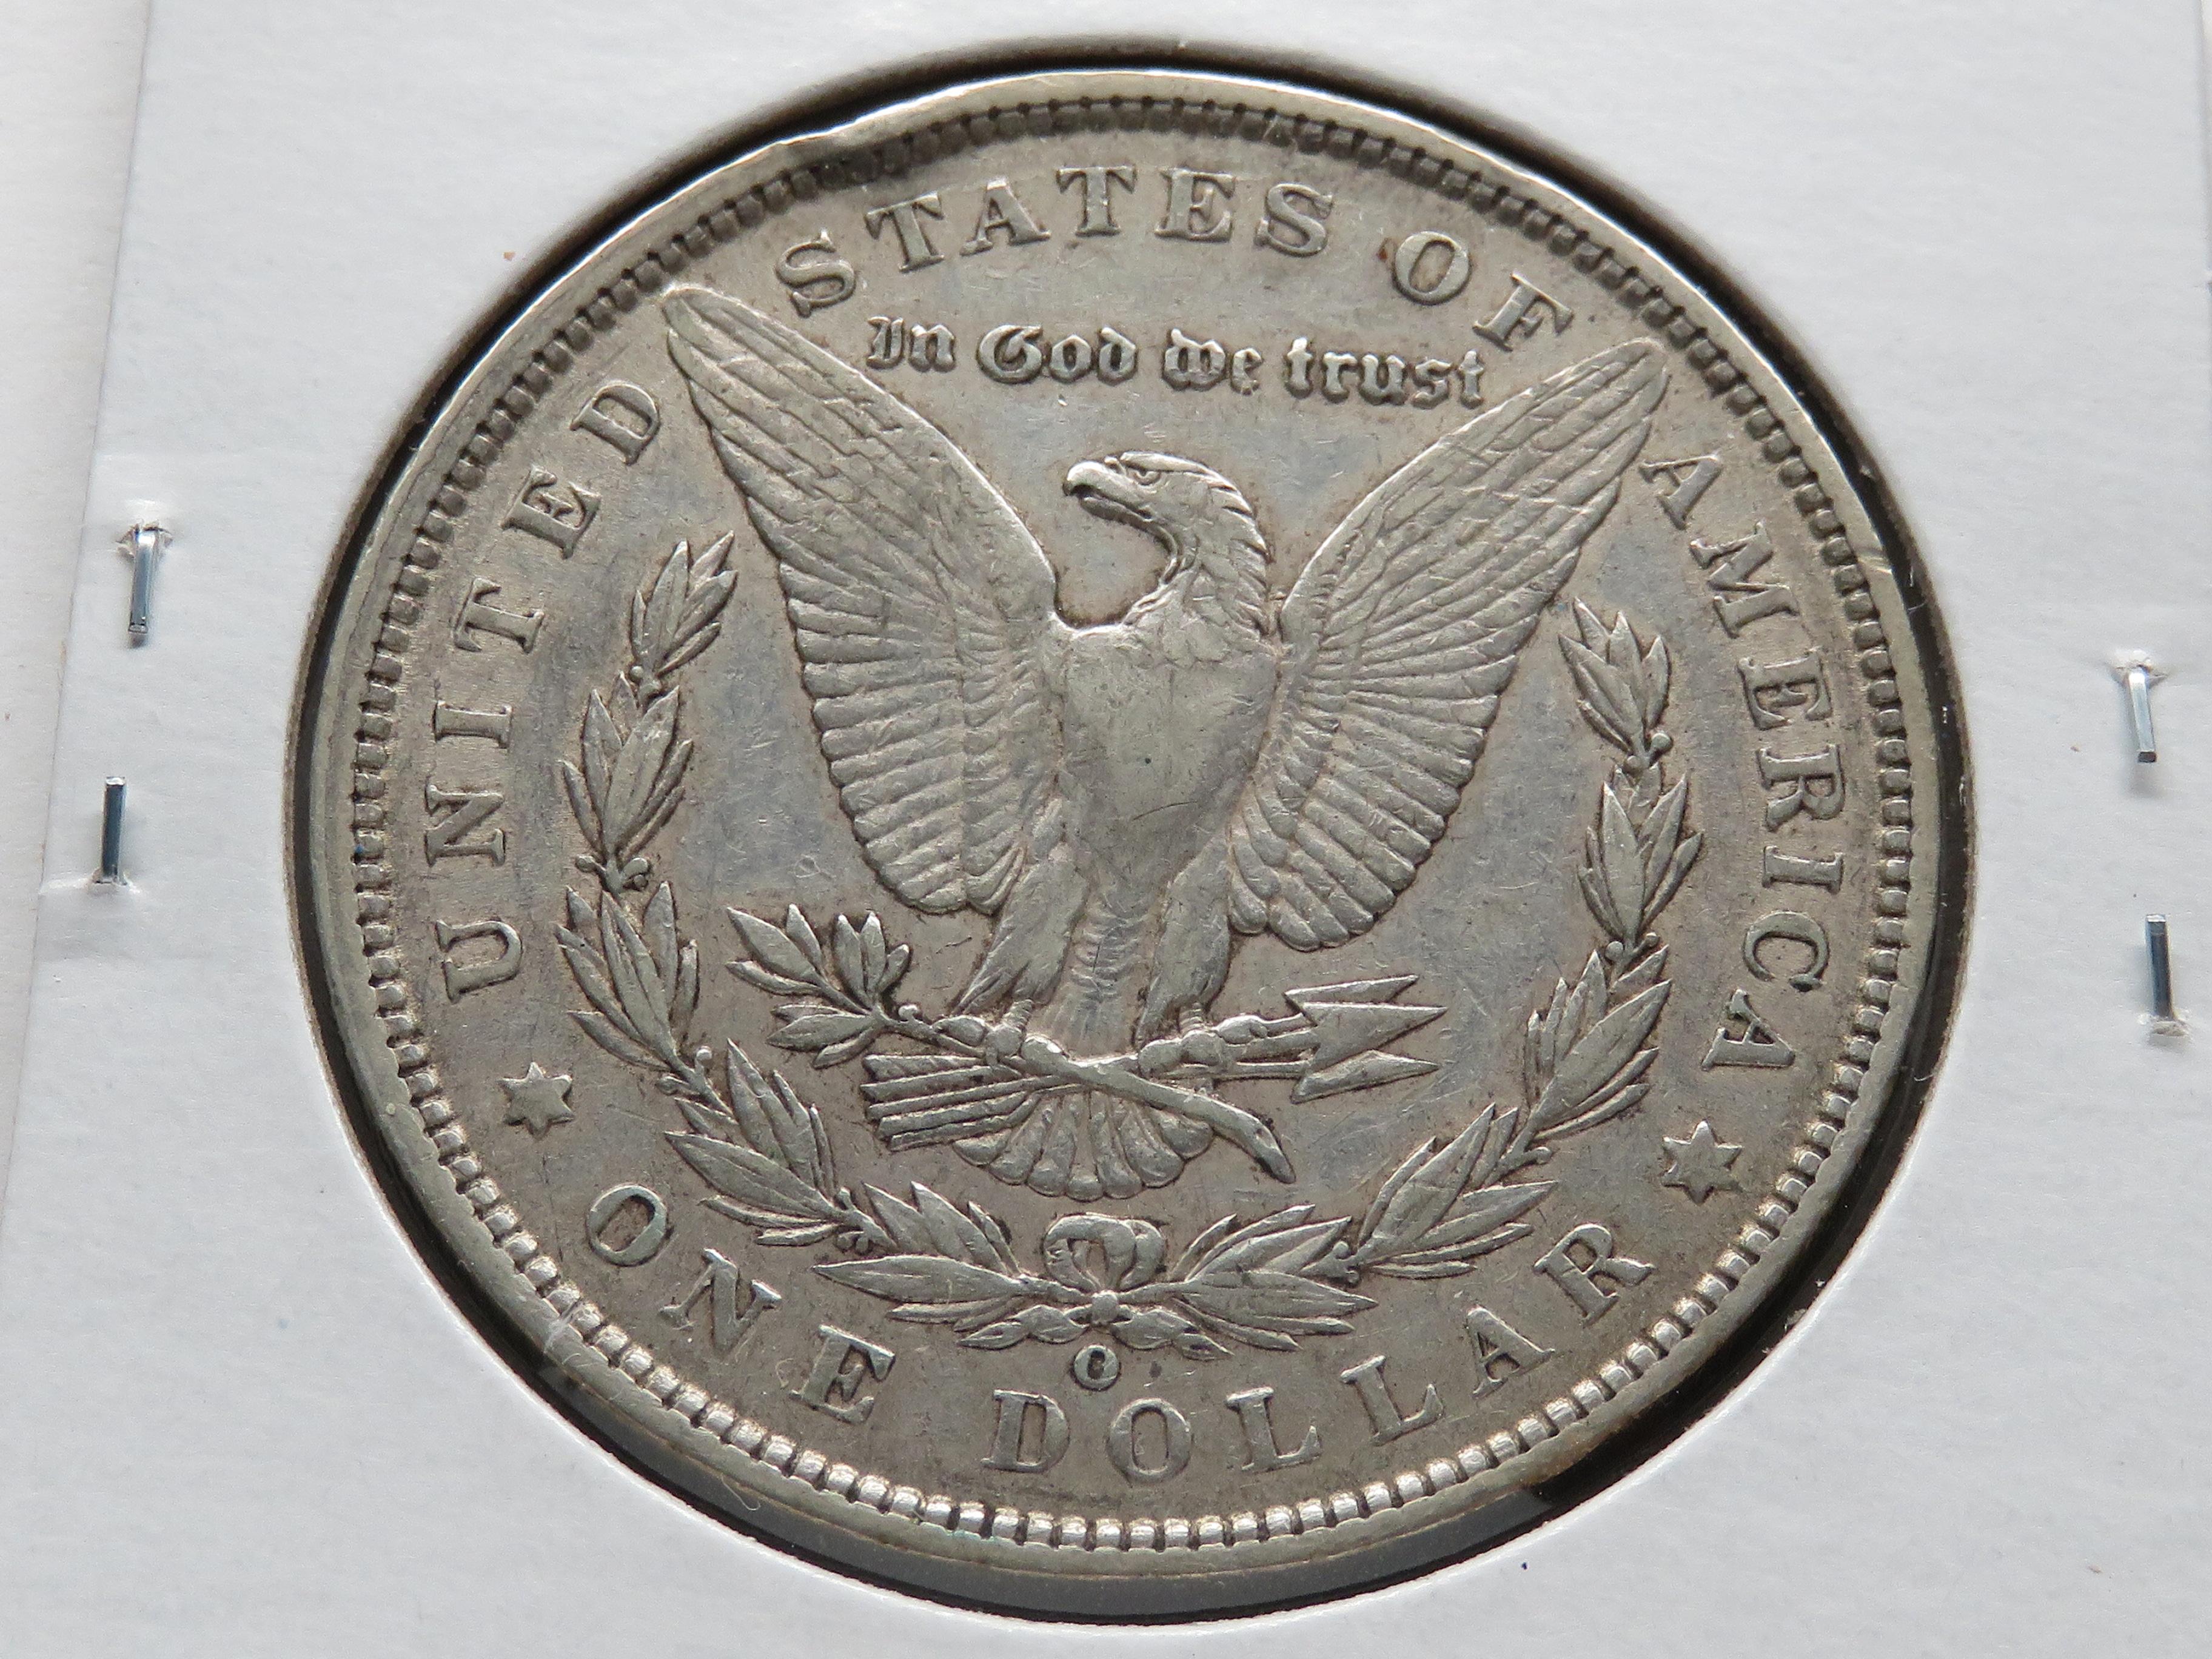 2 Morgan $: 1900-O VF, 1901-O VG